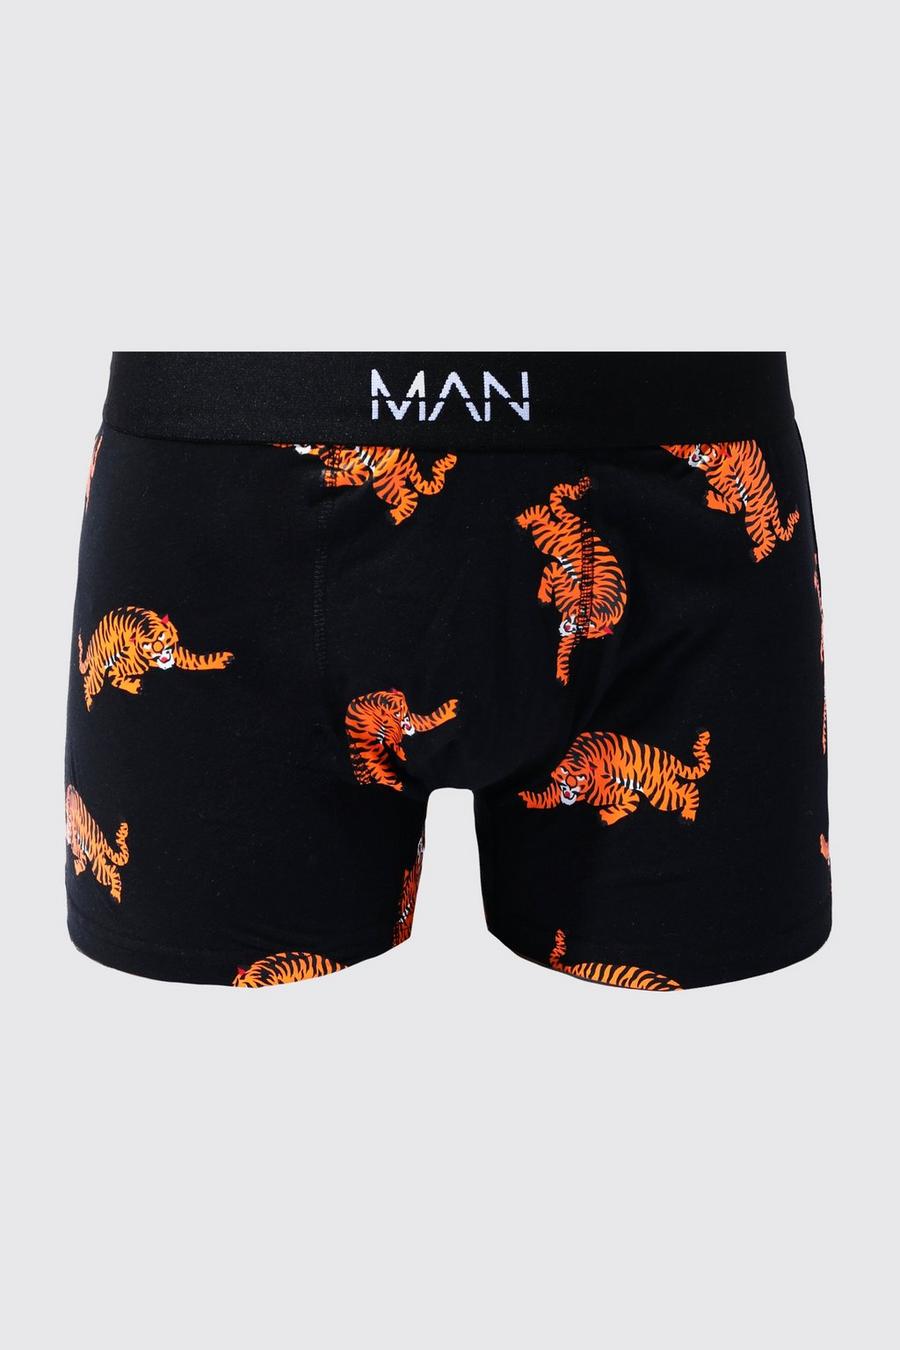 Man-Dash Boxershirts mit Tigerprint, Black noir image number 1